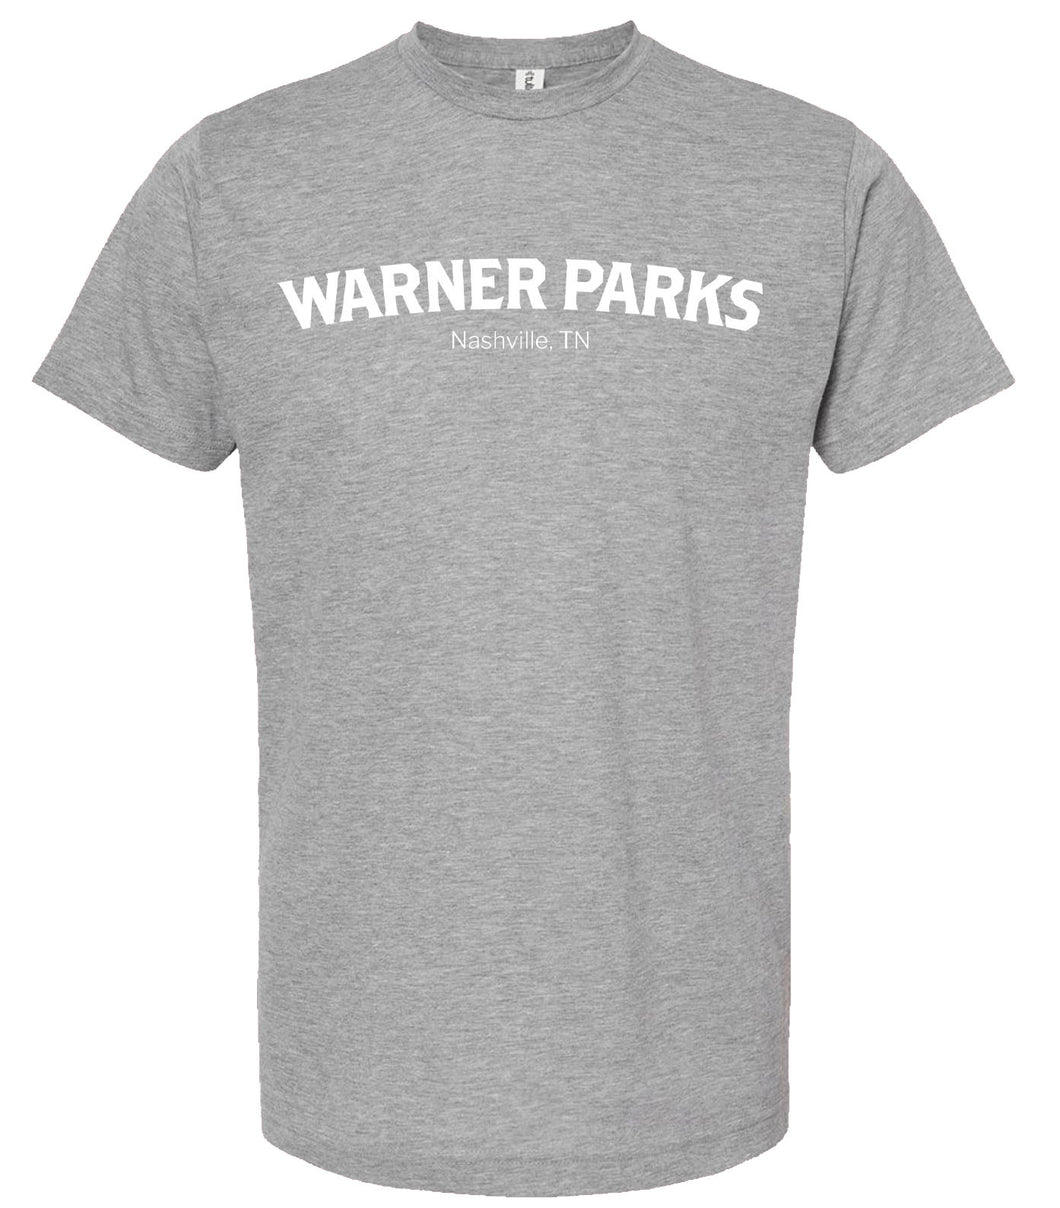 Warner Parks T-shirt